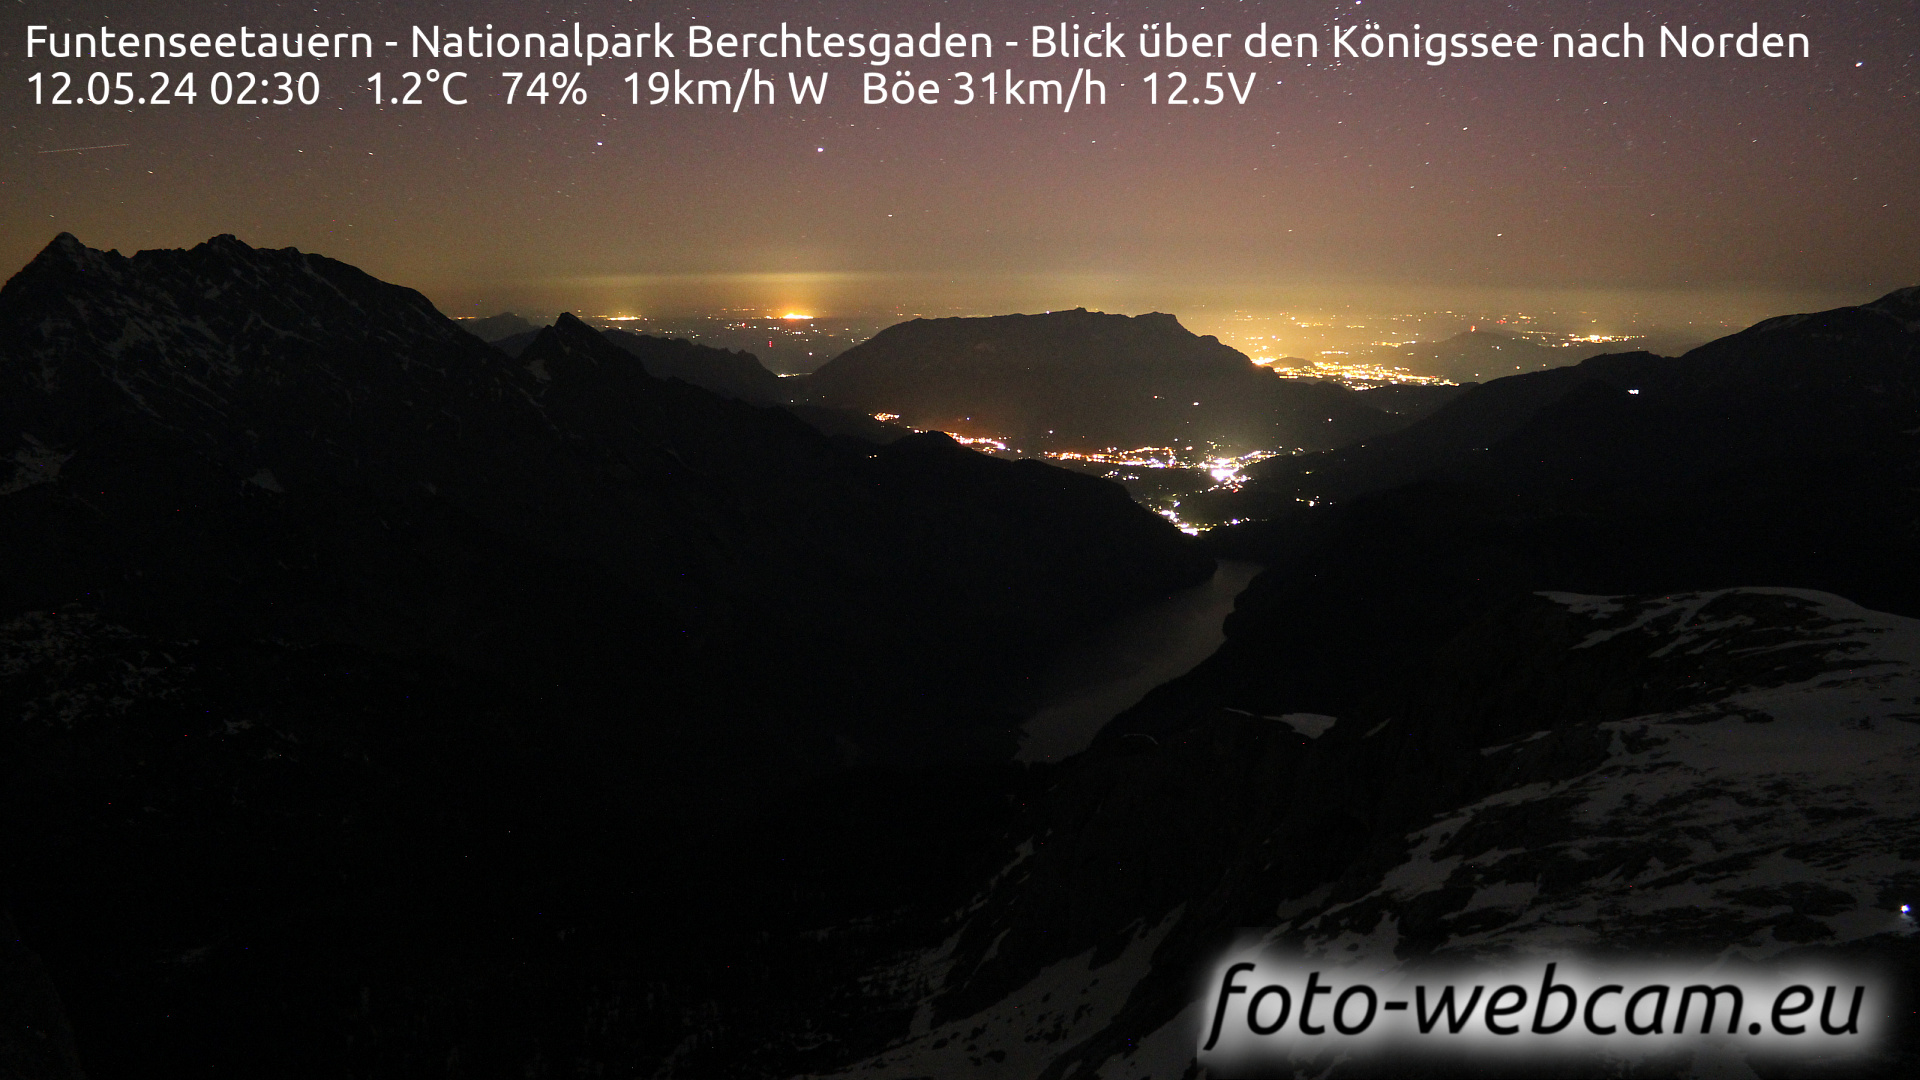 Berchtesgaden Do. 02:48